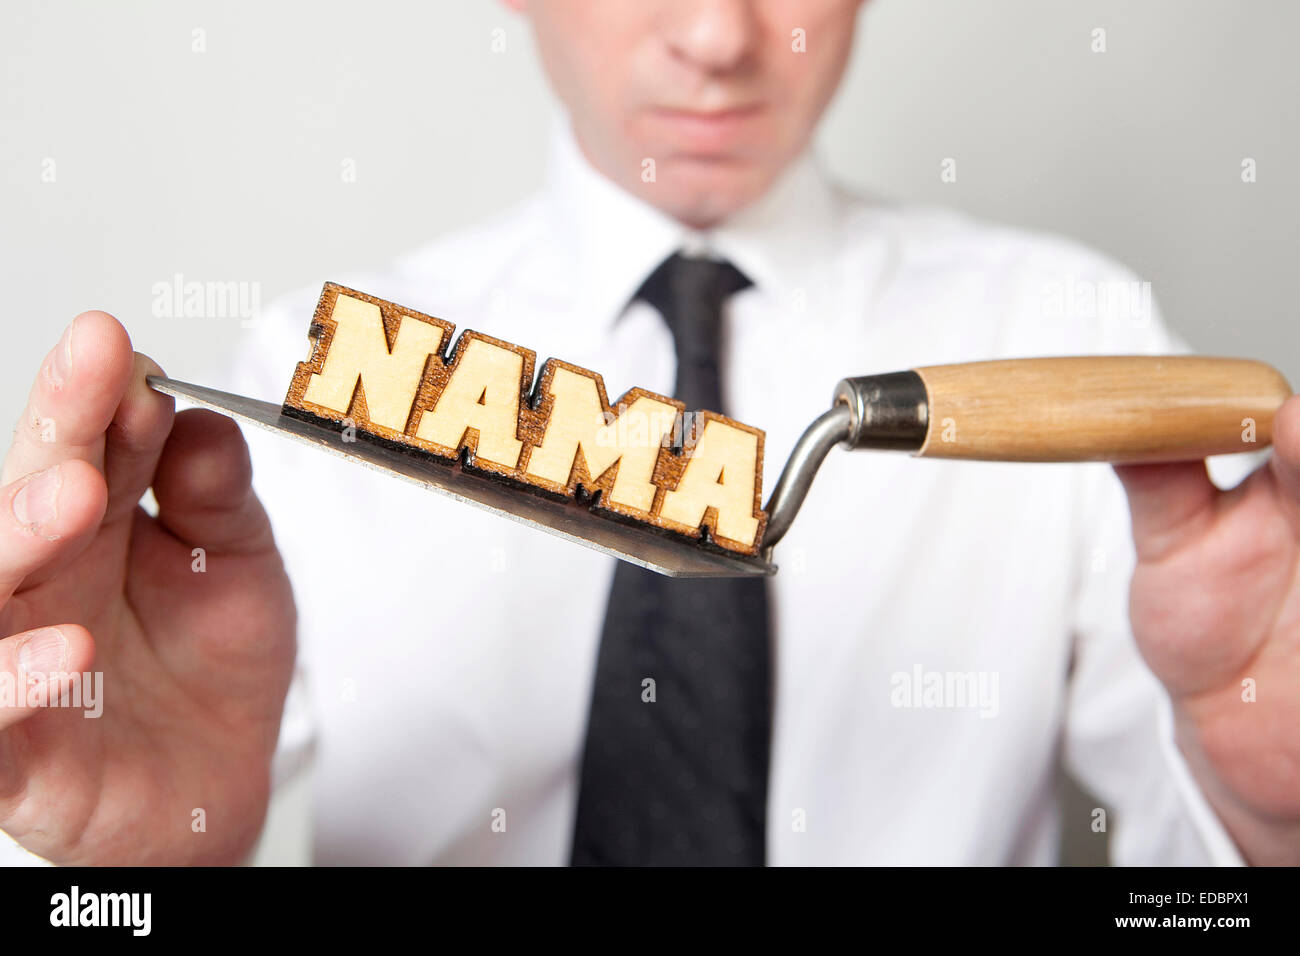 Illustrative image of National Asset Management Agency (NAMA). Stock Photo